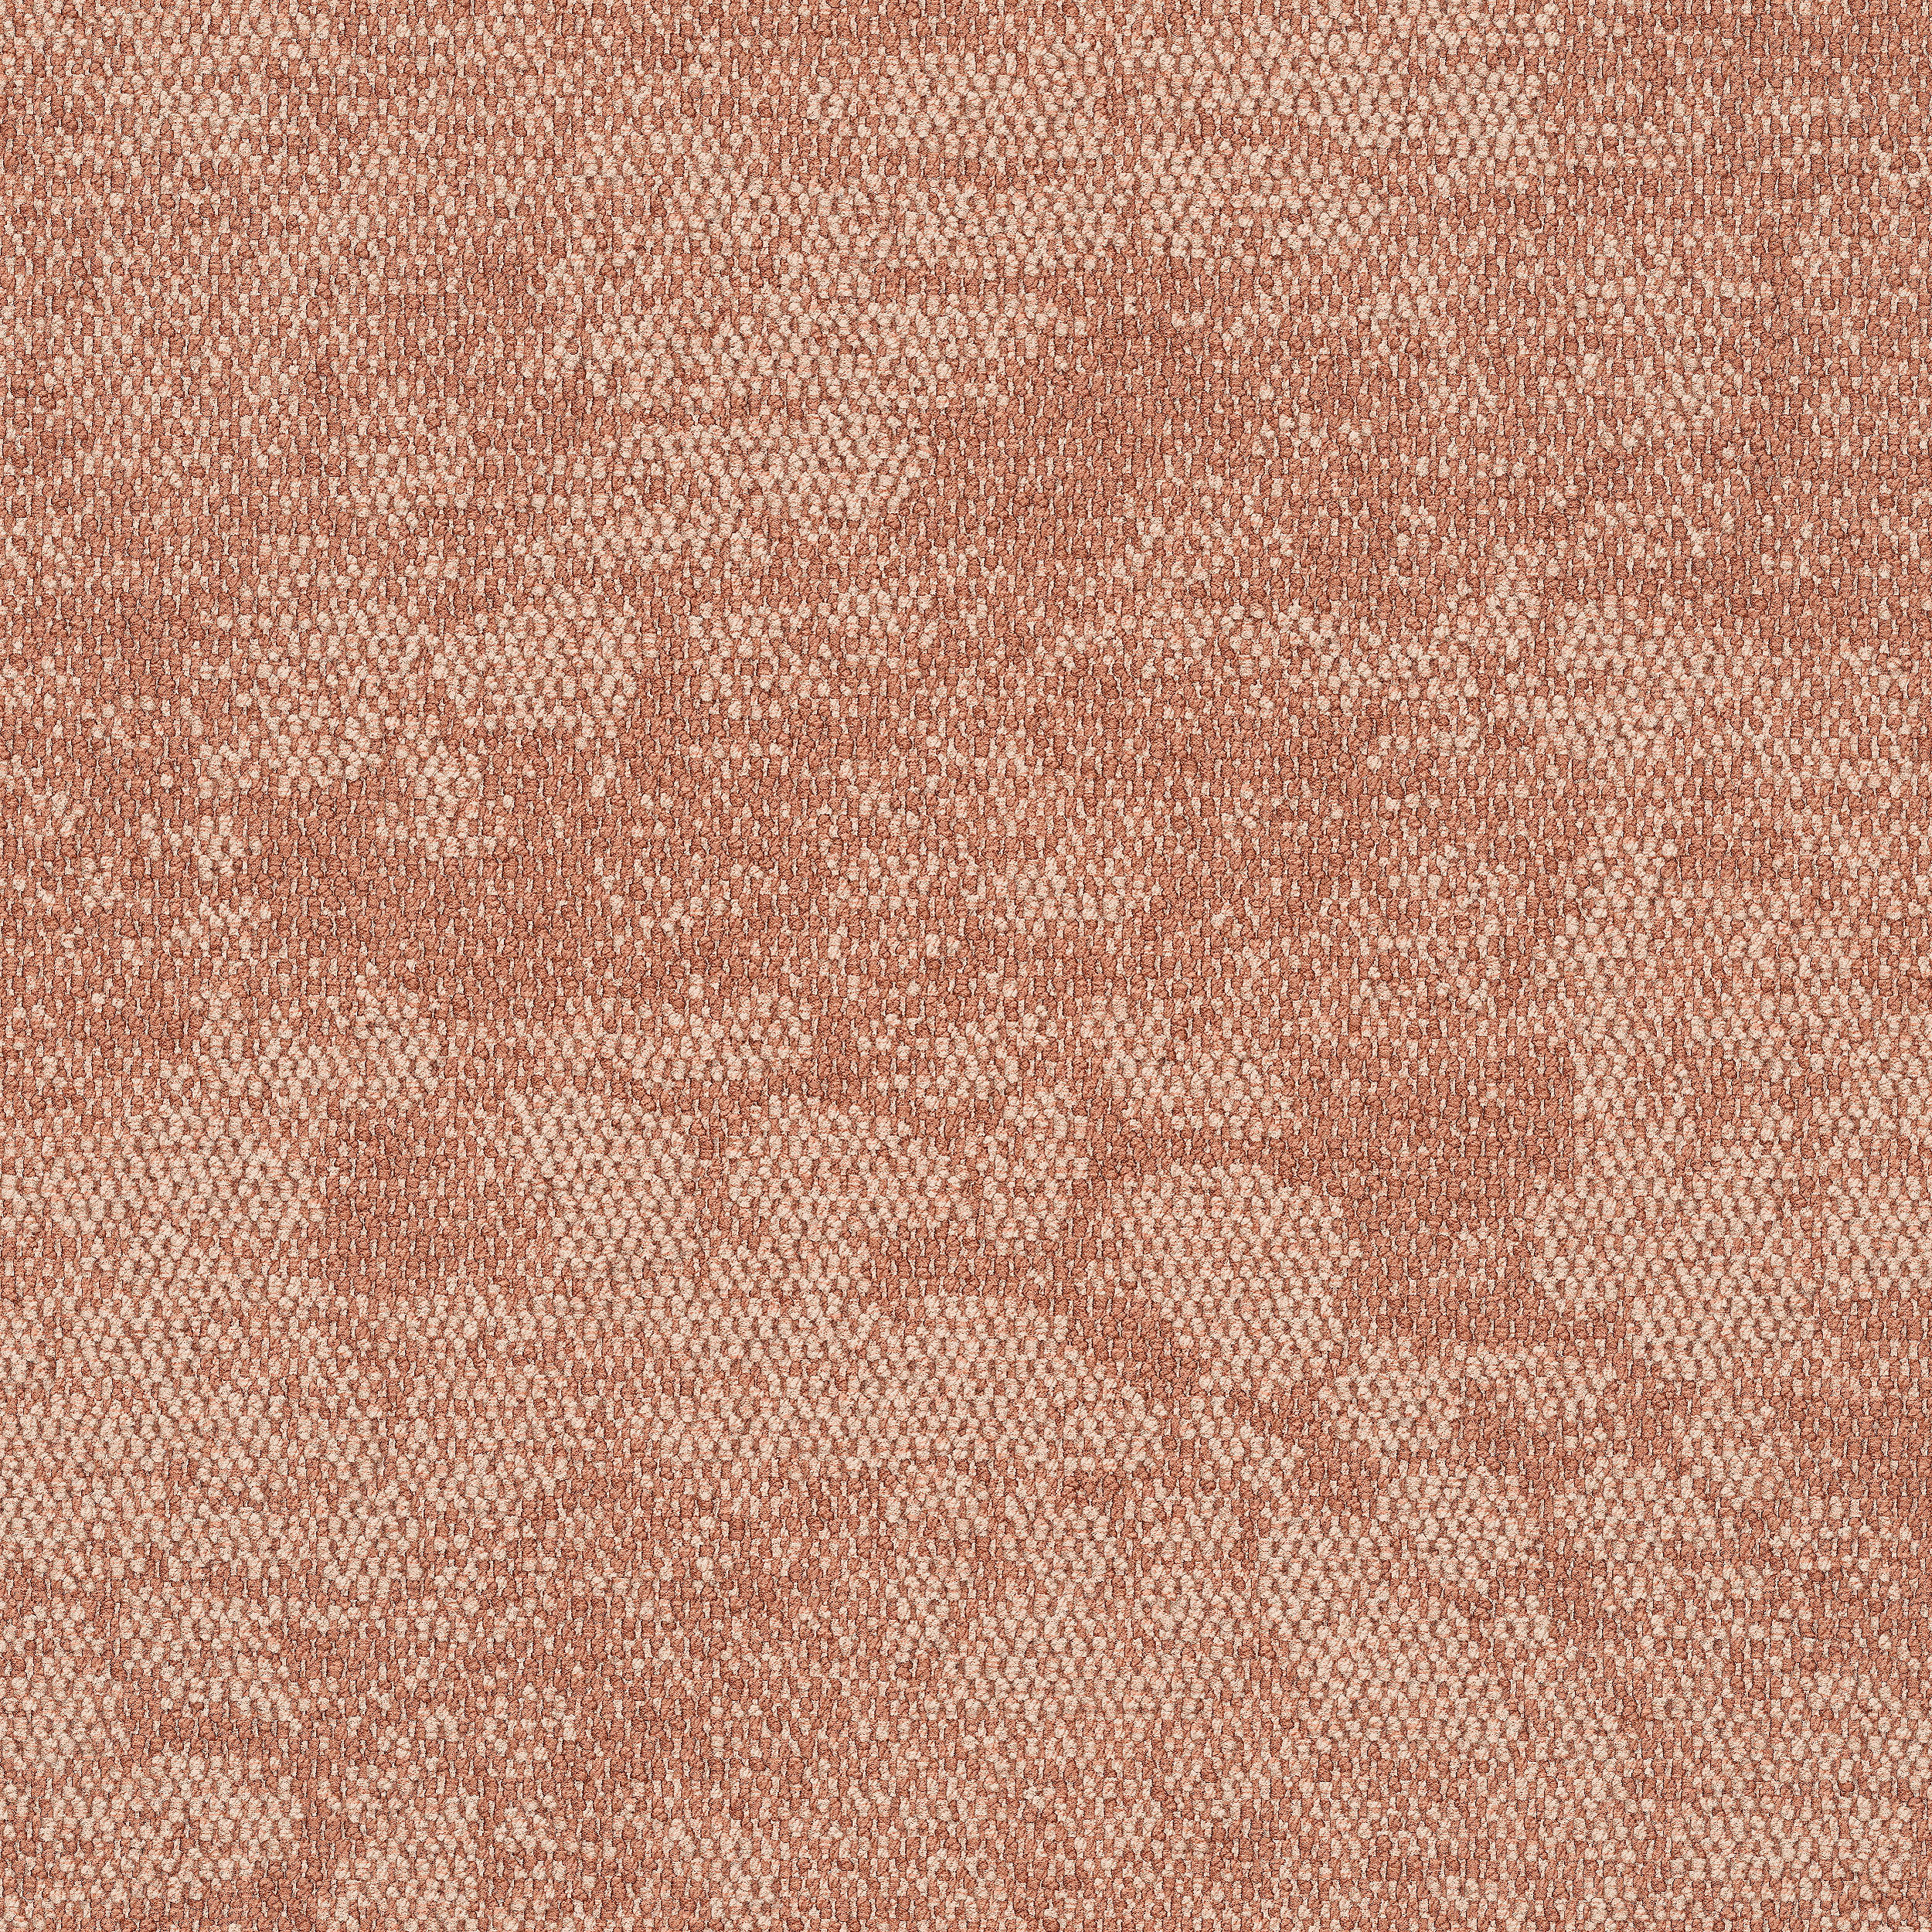 Escarpment carpet tile in Desert Sands afbeeldingnummer 11